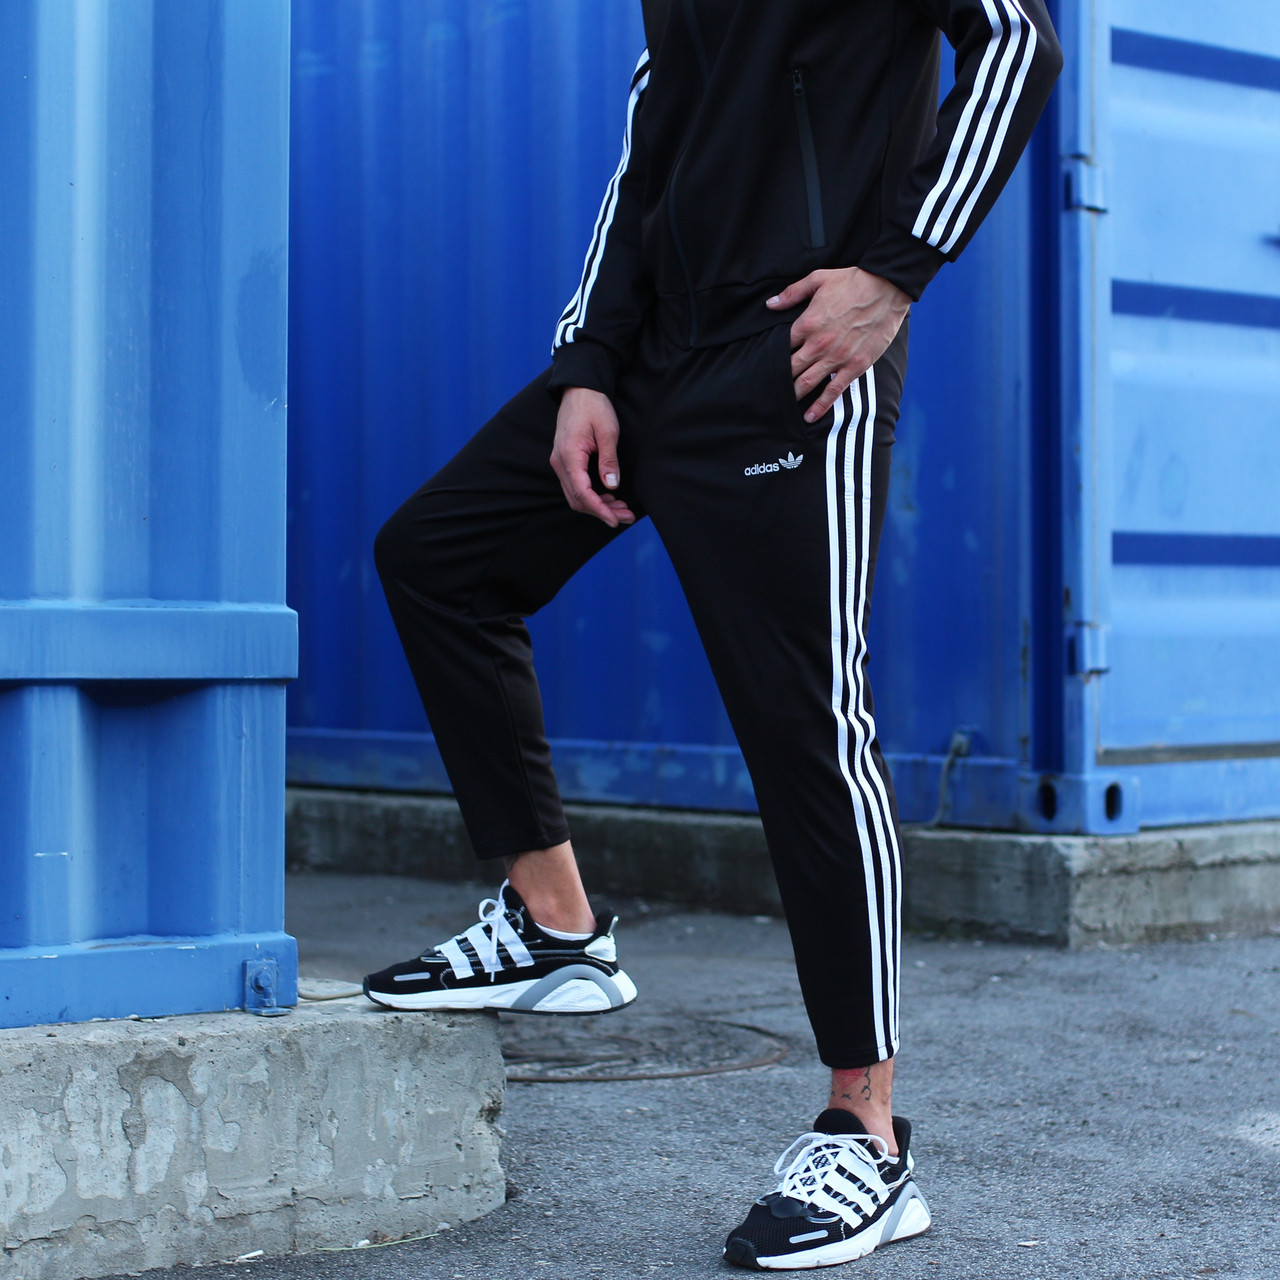 Спортивные штаны Adidas мужские укороченные осенние | весенние черные : 499  грн. - Спортивні штани Київ на BON.ua 88232234